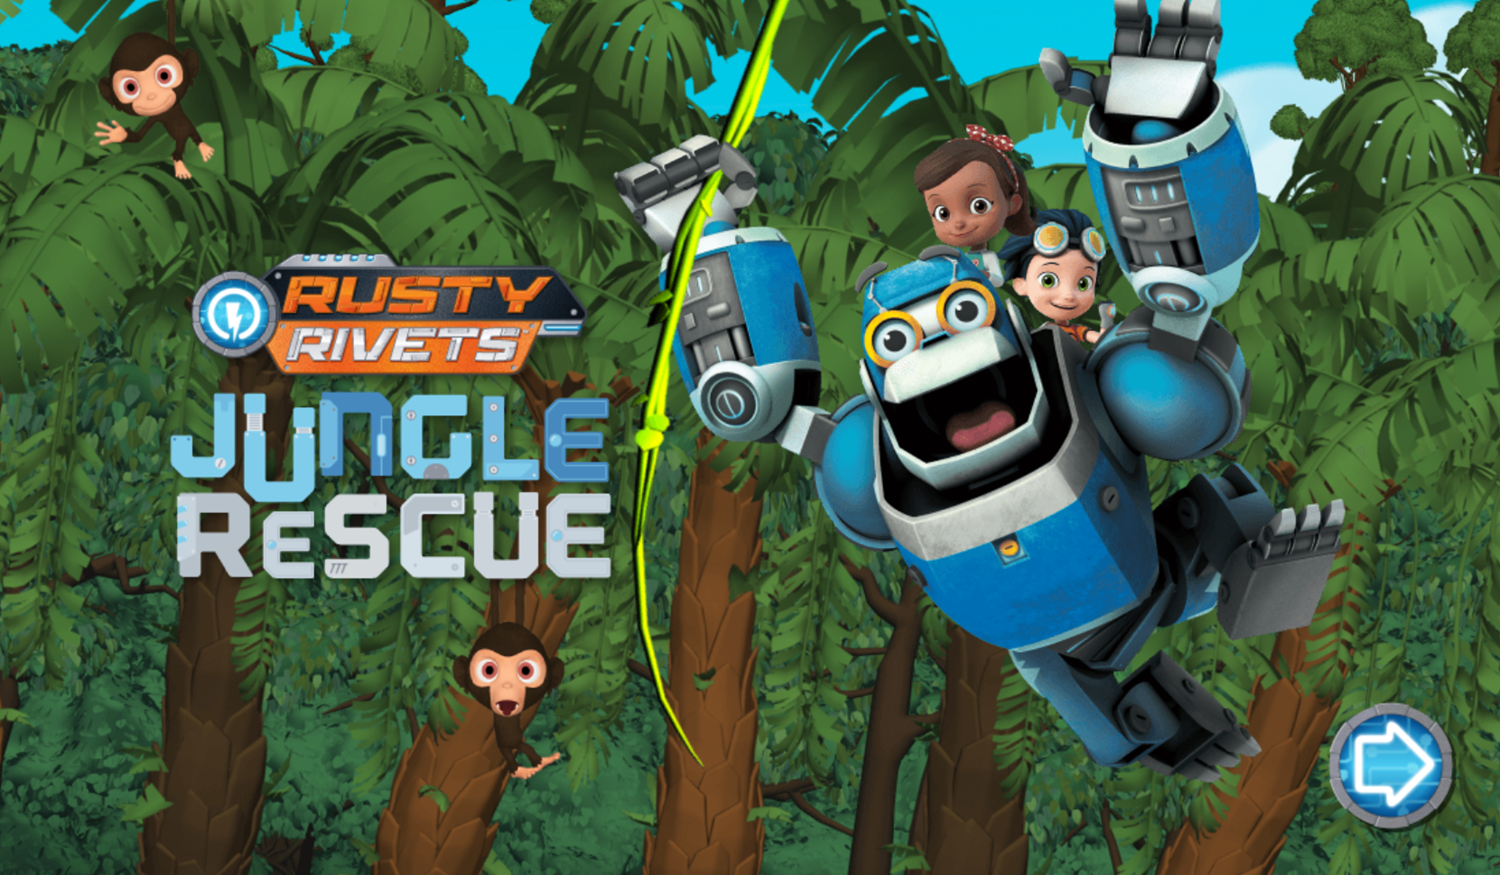 Rusty Rivets Jungle Rescue Game Welcome Screen Screenshot.